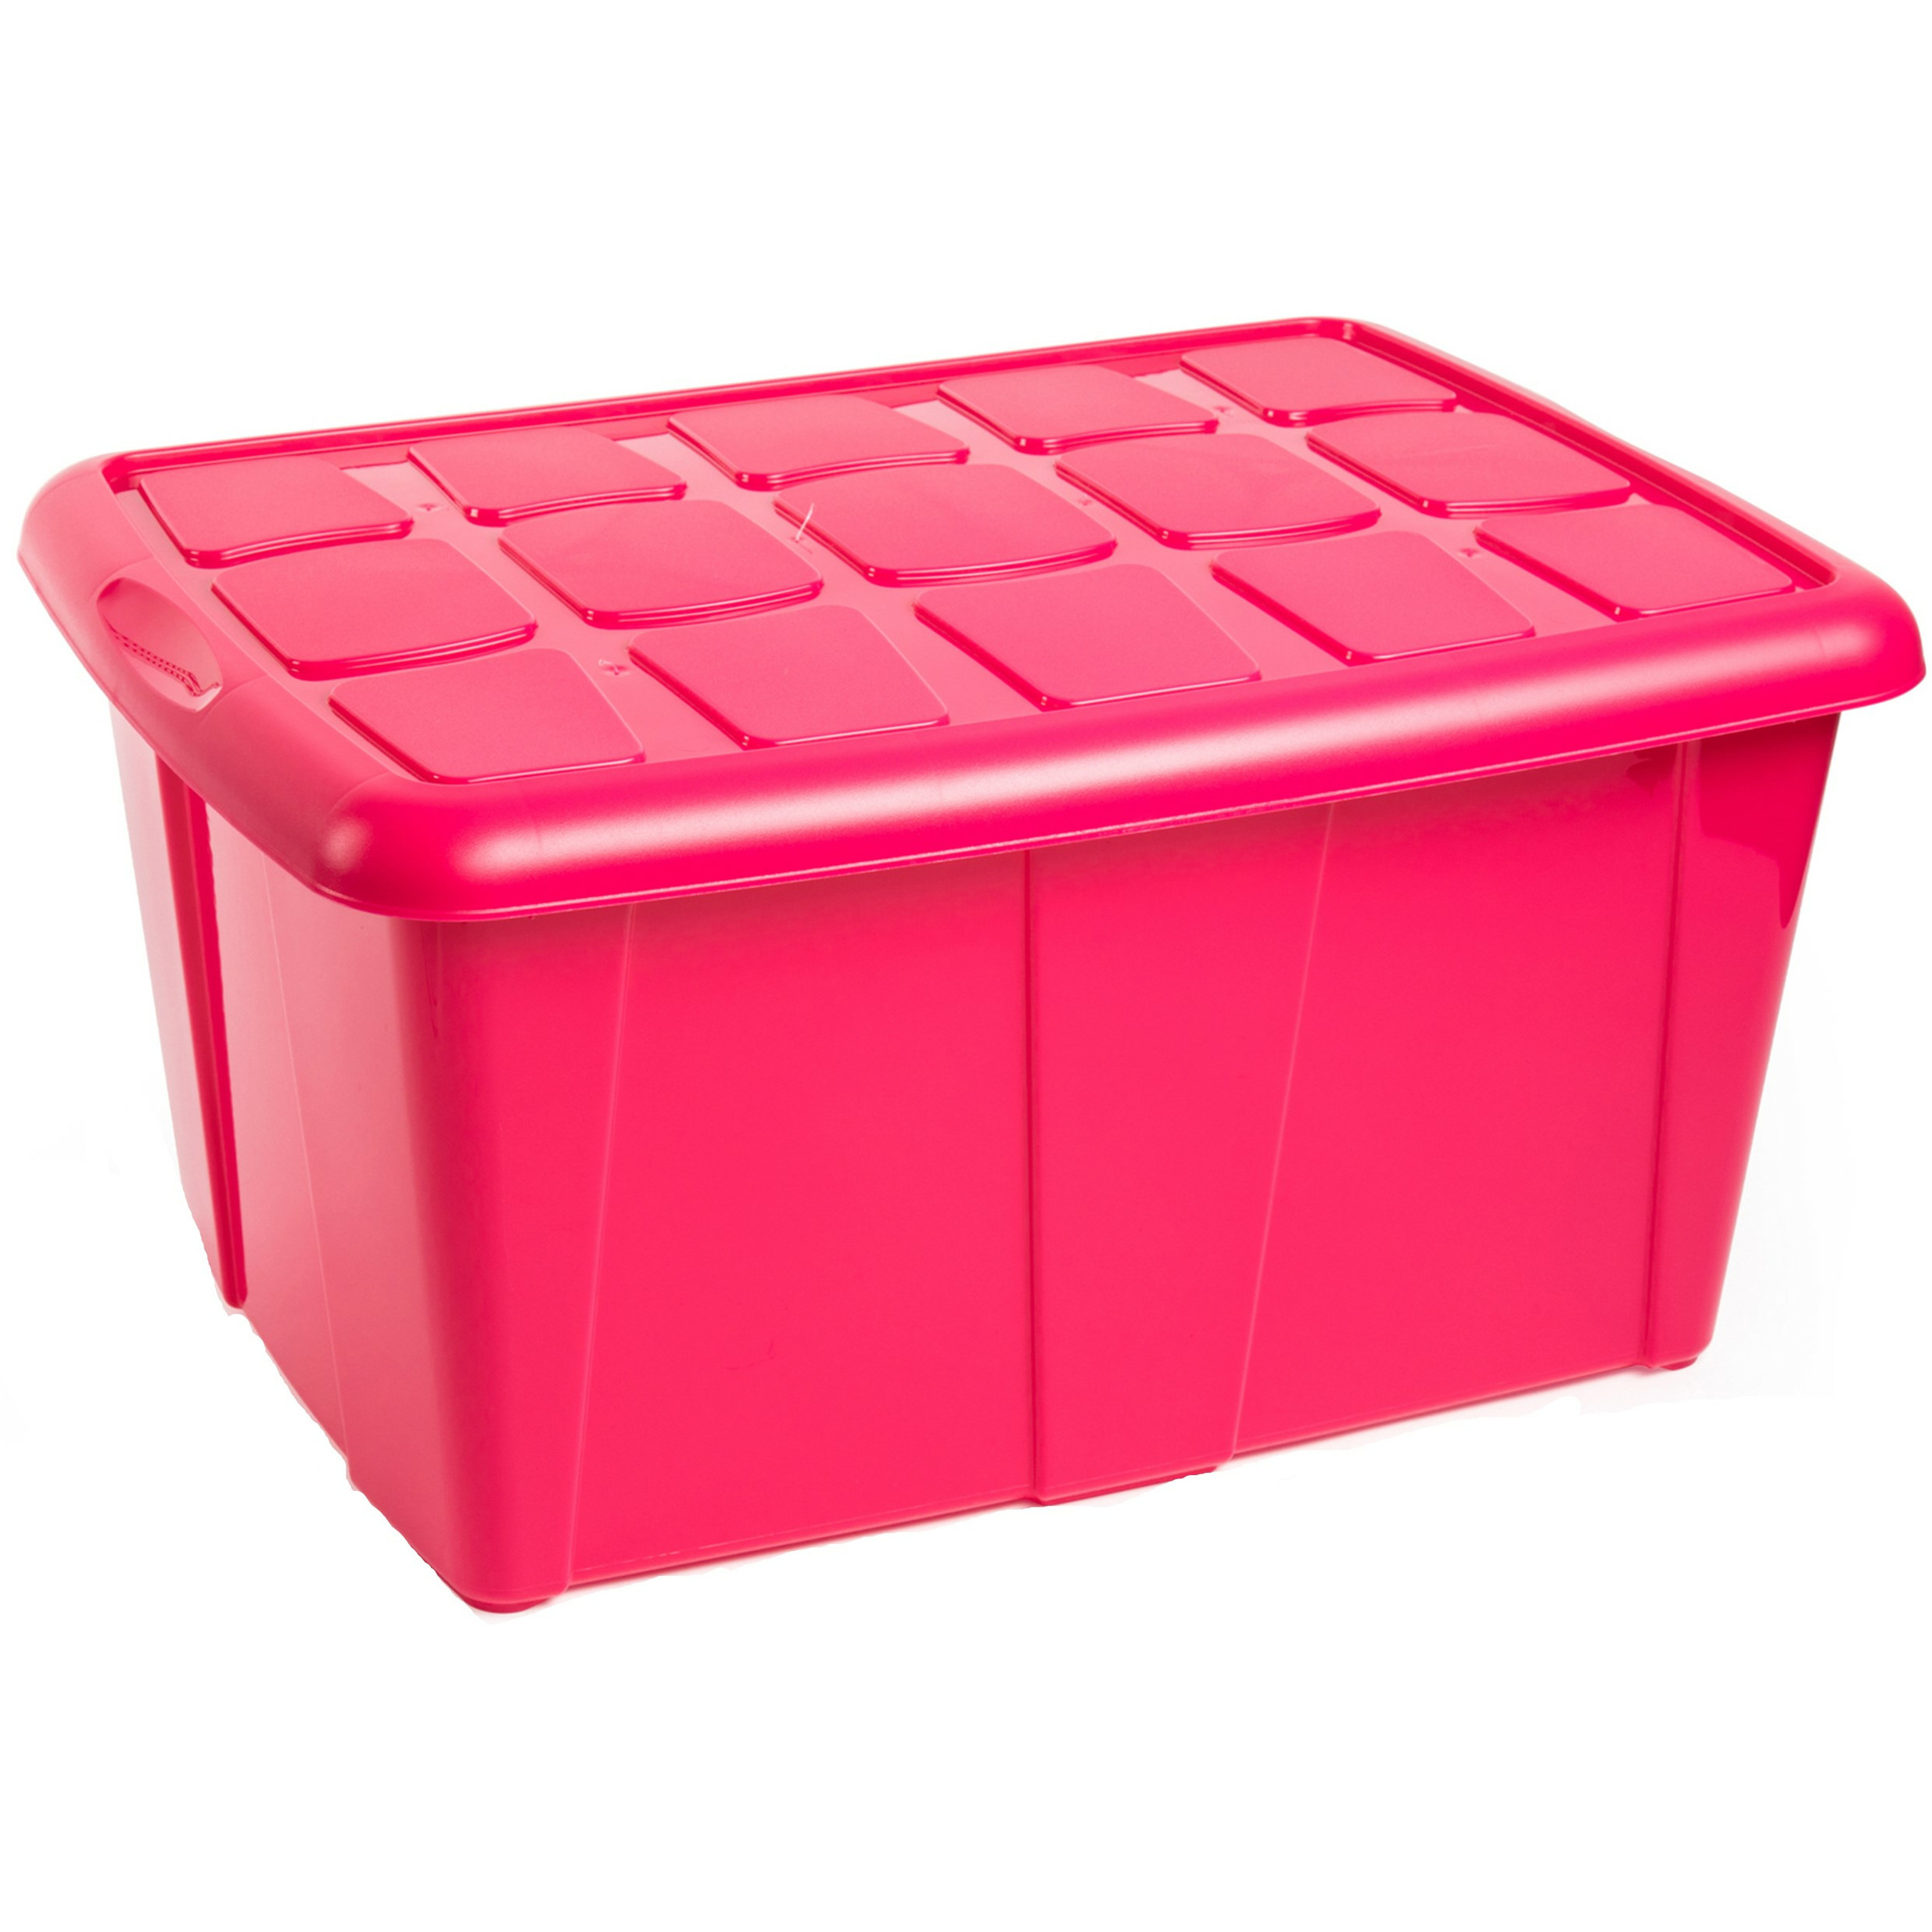 Opslagbox kist van 60 liter met deksel Fuchsia roze kunststof 63 x 46 x 32 cm